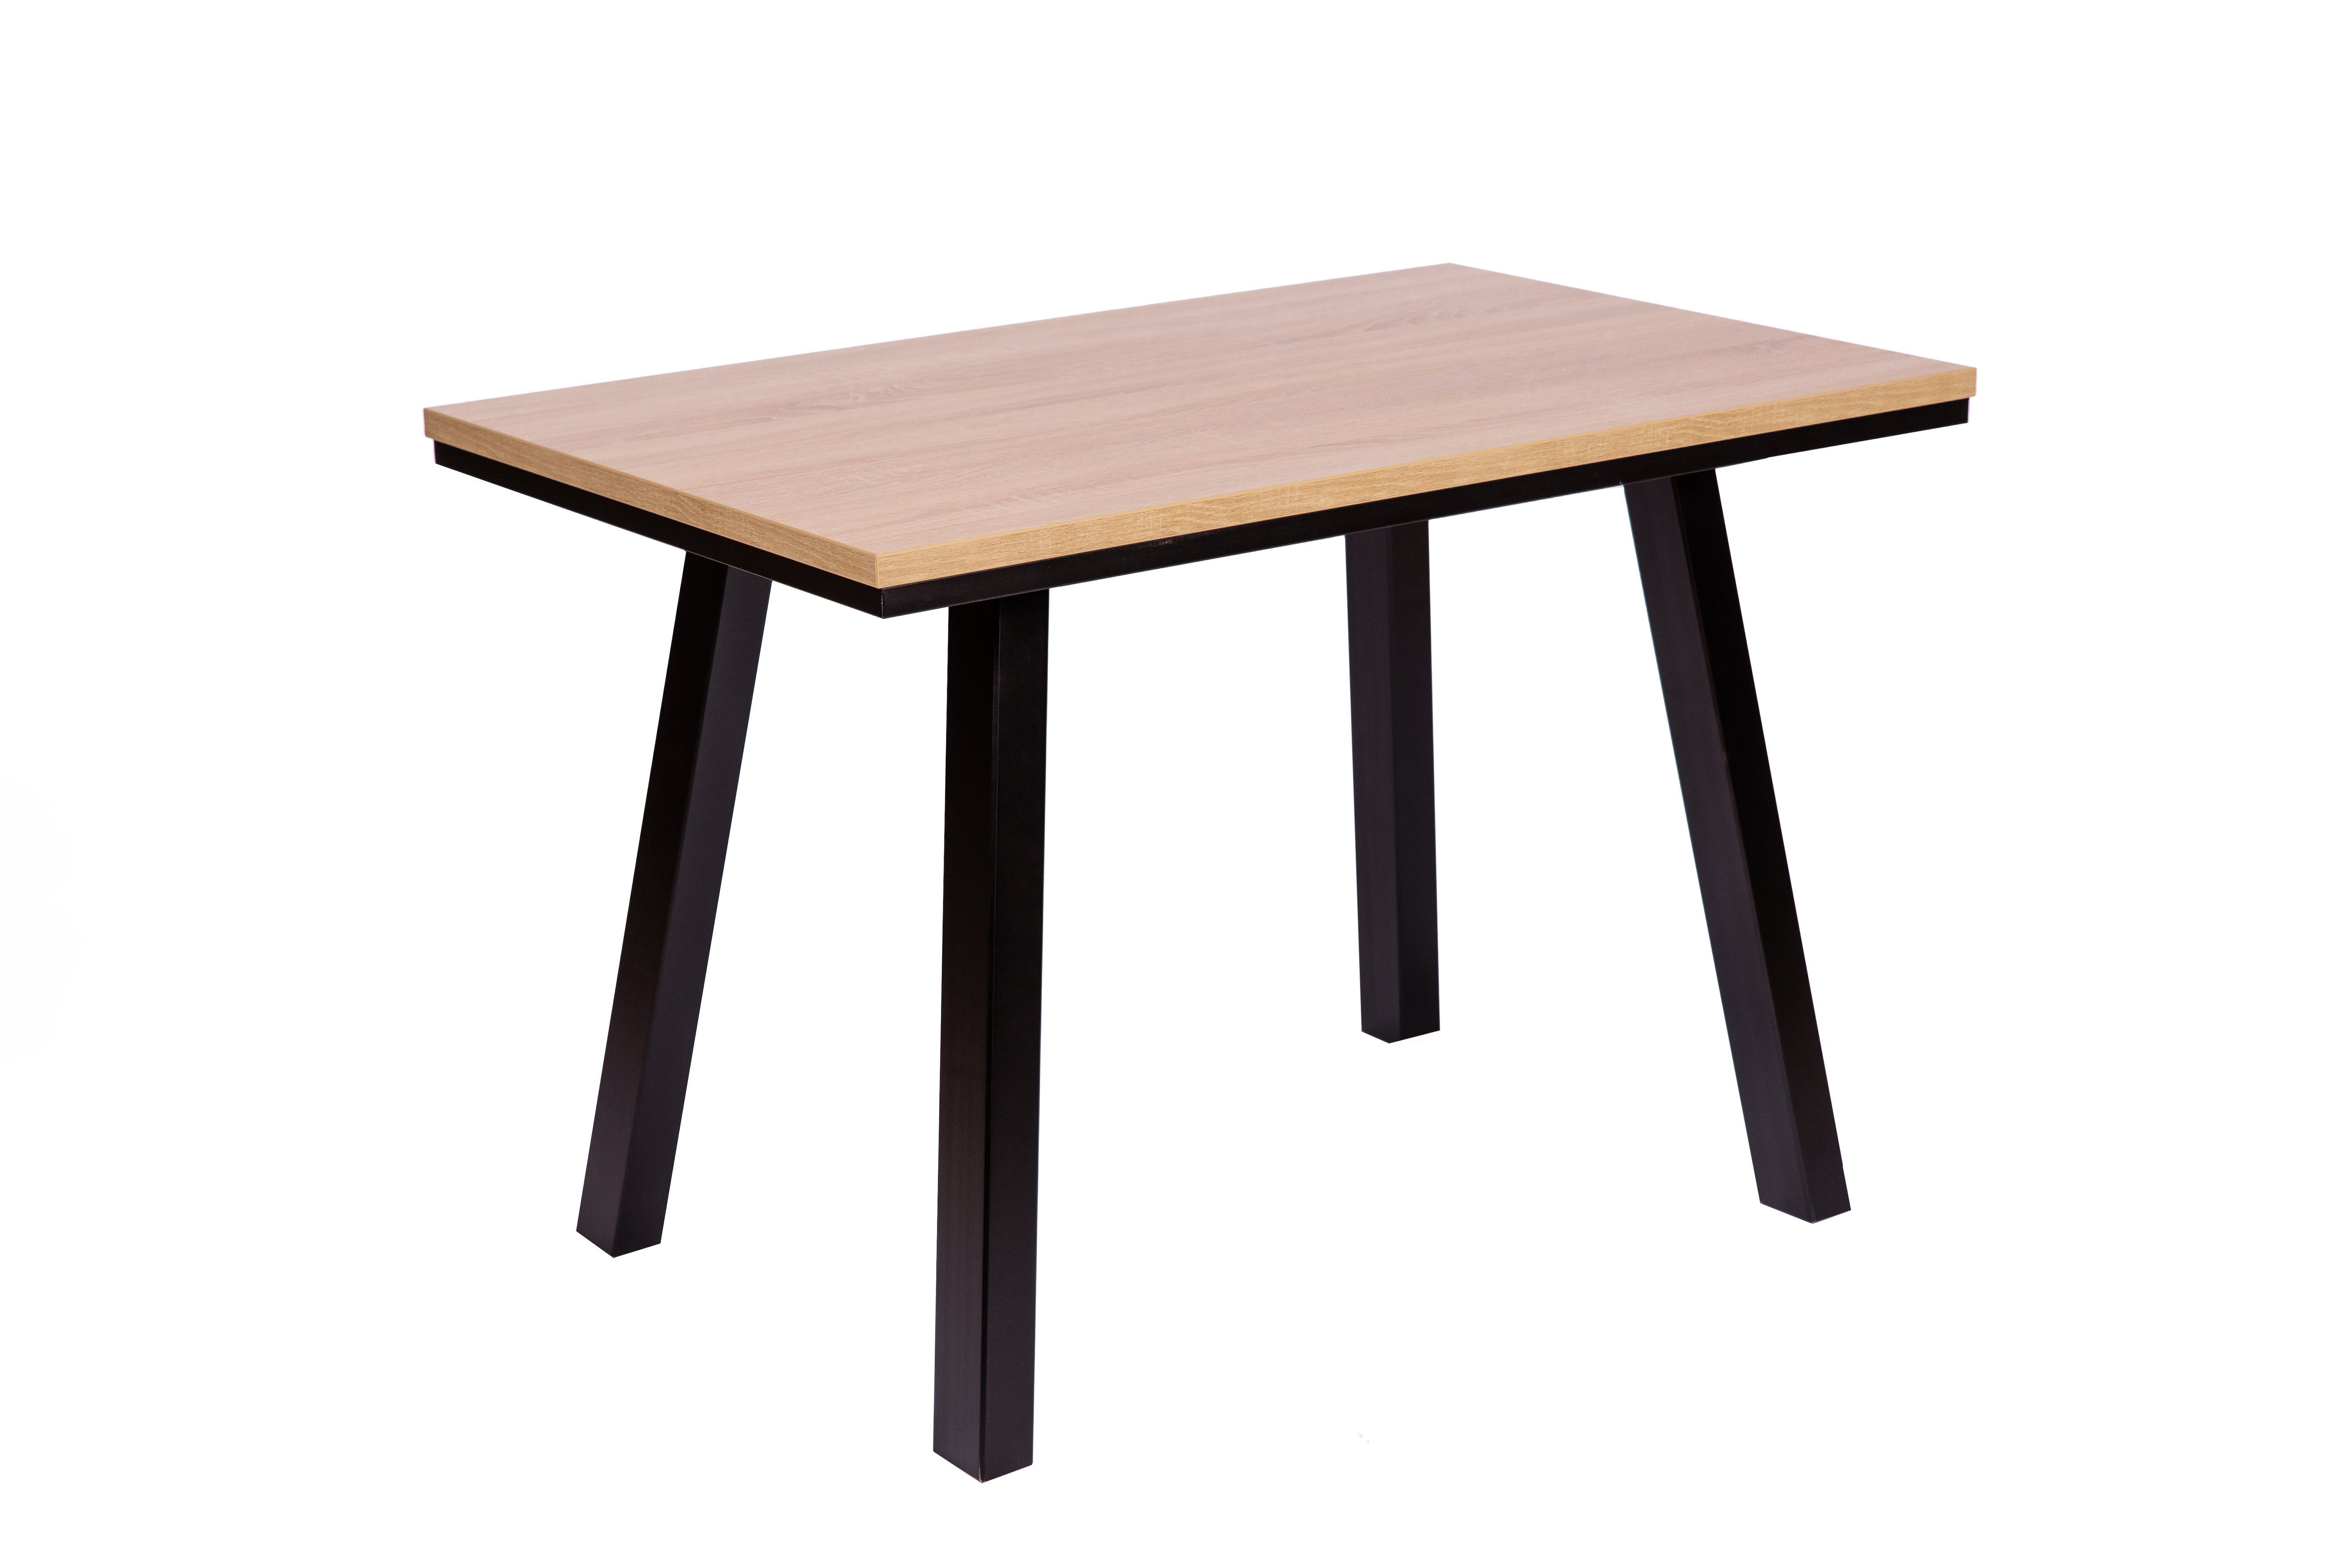 kundler home Esstisch 'Der Elegante' 110x70cm, Tischfüße massiv schwarz lackiert